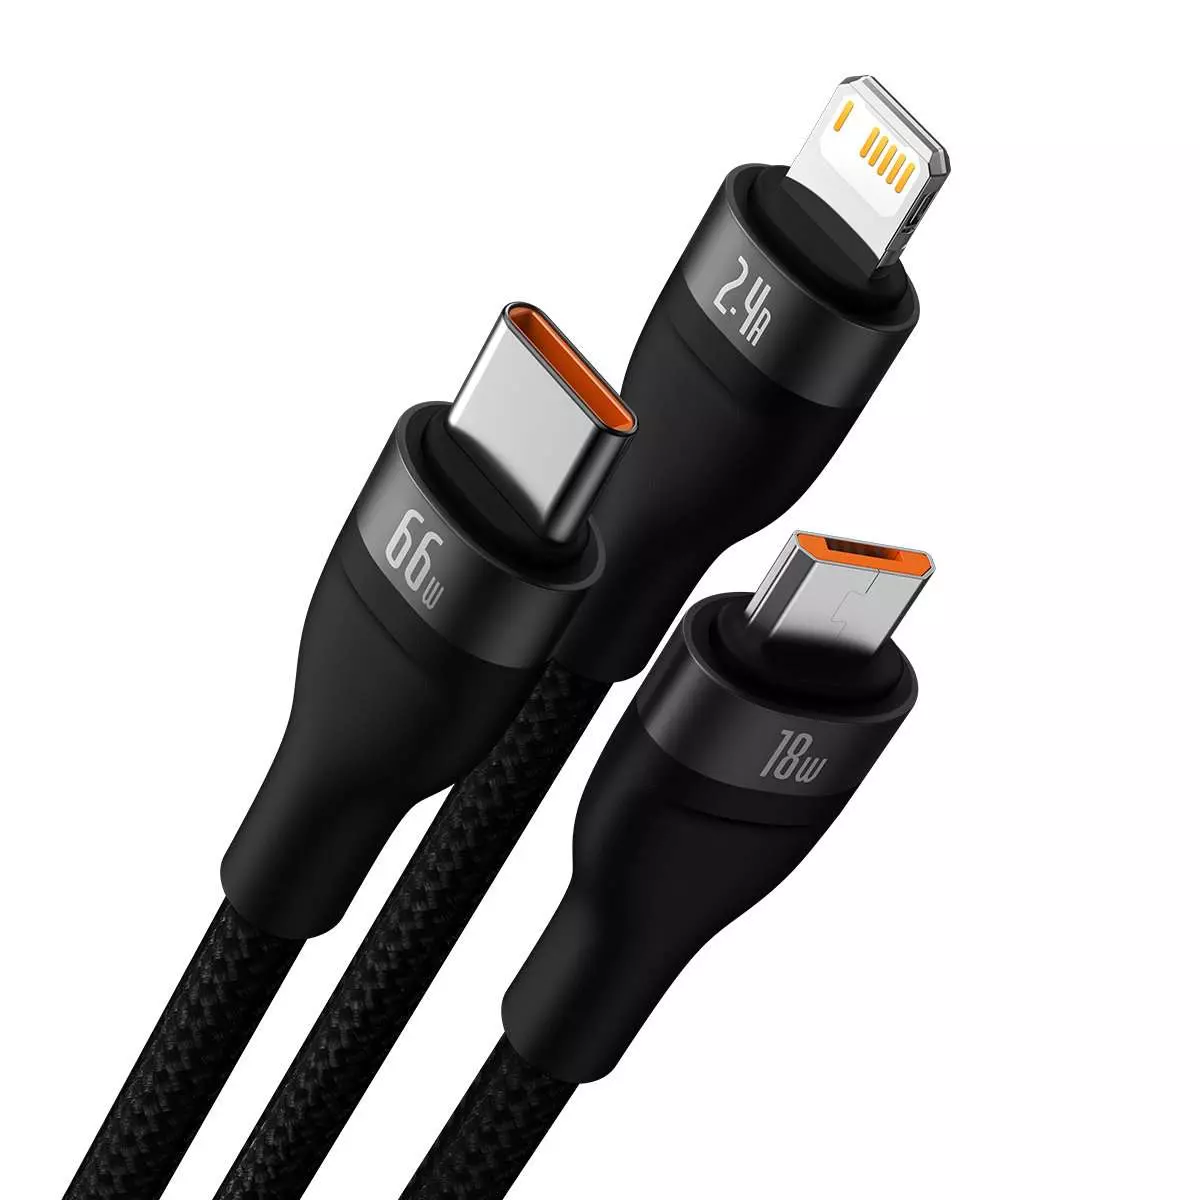 Kép 2/5 - Baseus Flash II 3-in-1 töltő- és adatkábel USB Type-C - Micro / Lightning / Type-C 66W, 1.2m, fekete